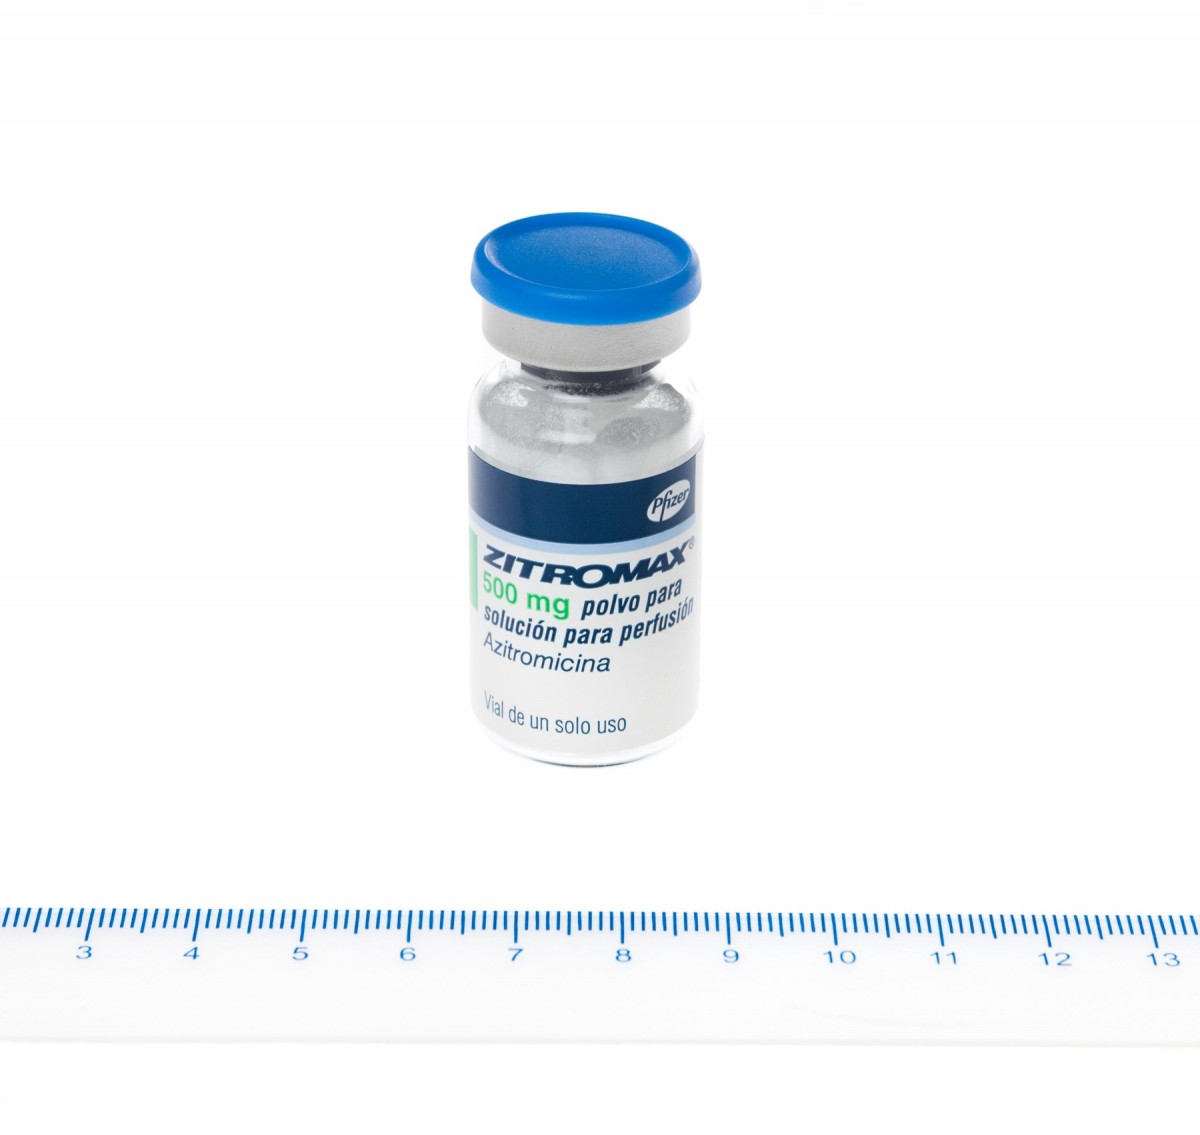 ZITROMAX 500 mg POLVO PARA SOLUCION PARA PERFUSION, 1 vial fotografía de la forma farmacéutica.